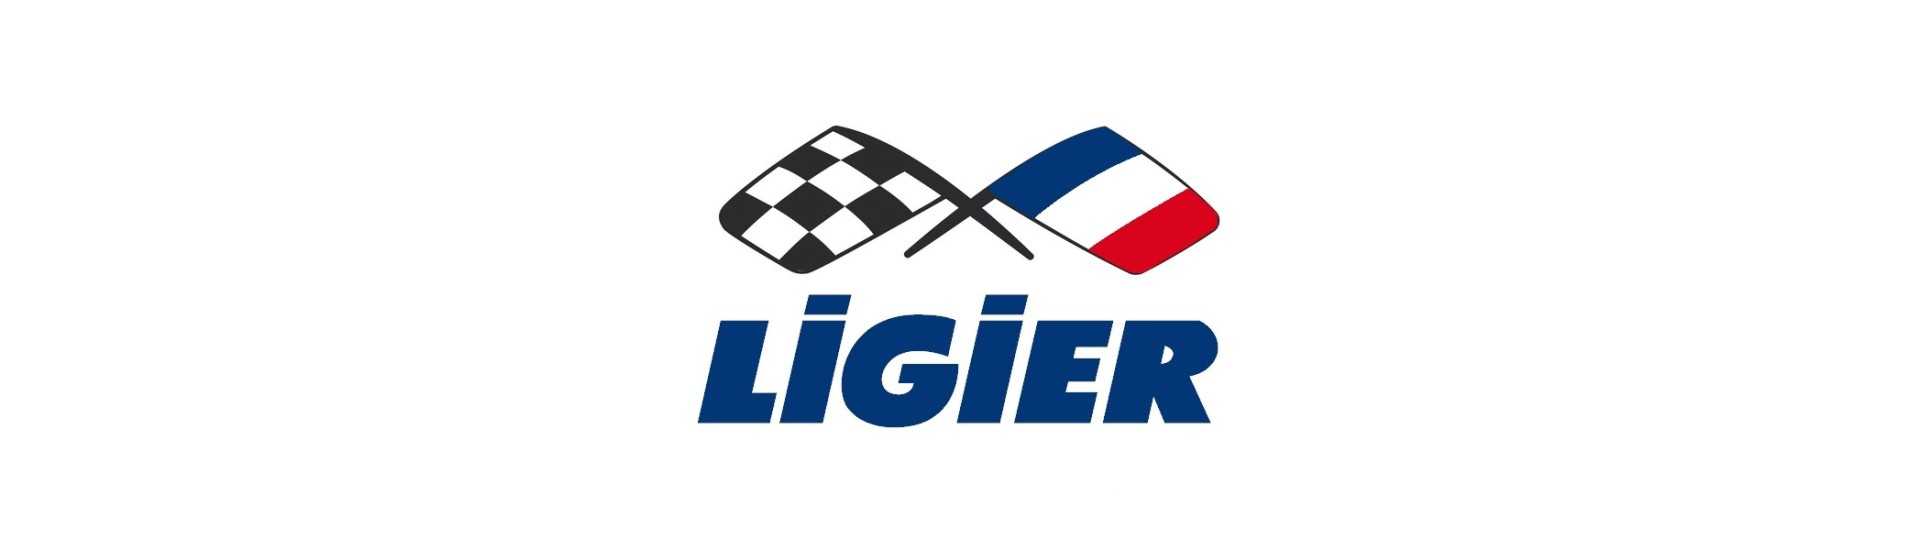 Ensemble moyeu complet au meilleur prix pour voiture sans permis Ligier